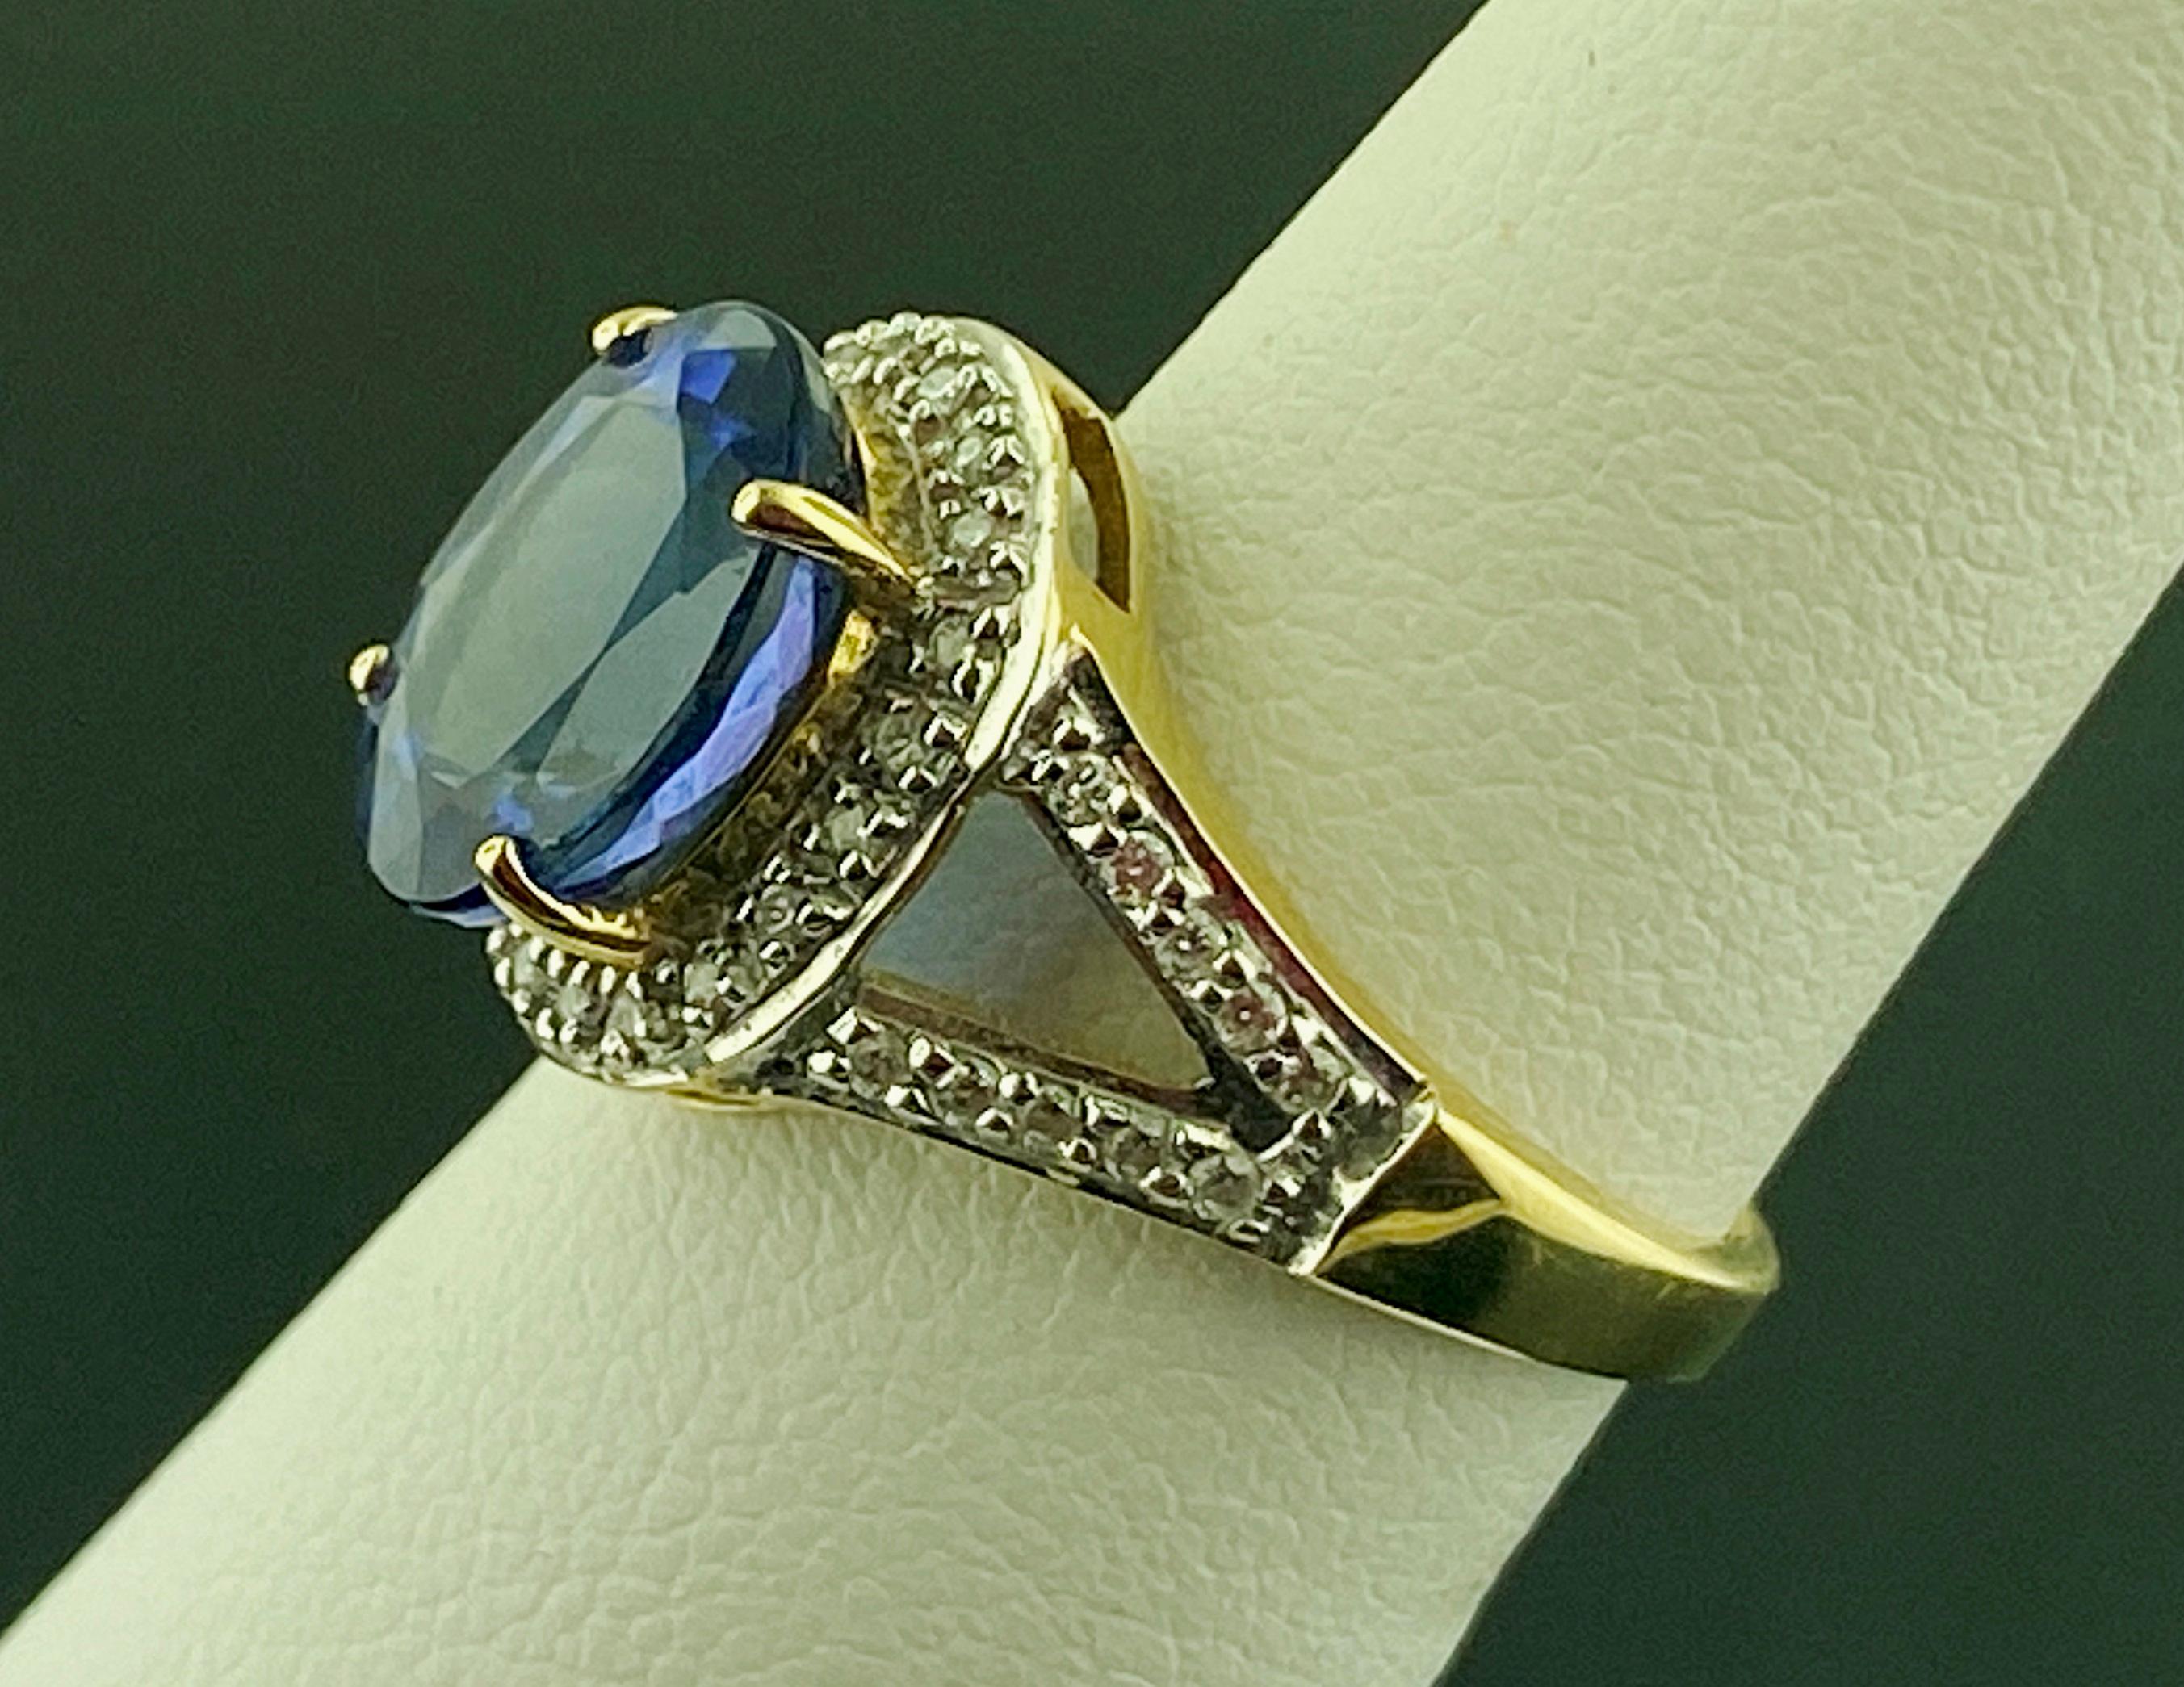 3 carat tanzanite ring worth